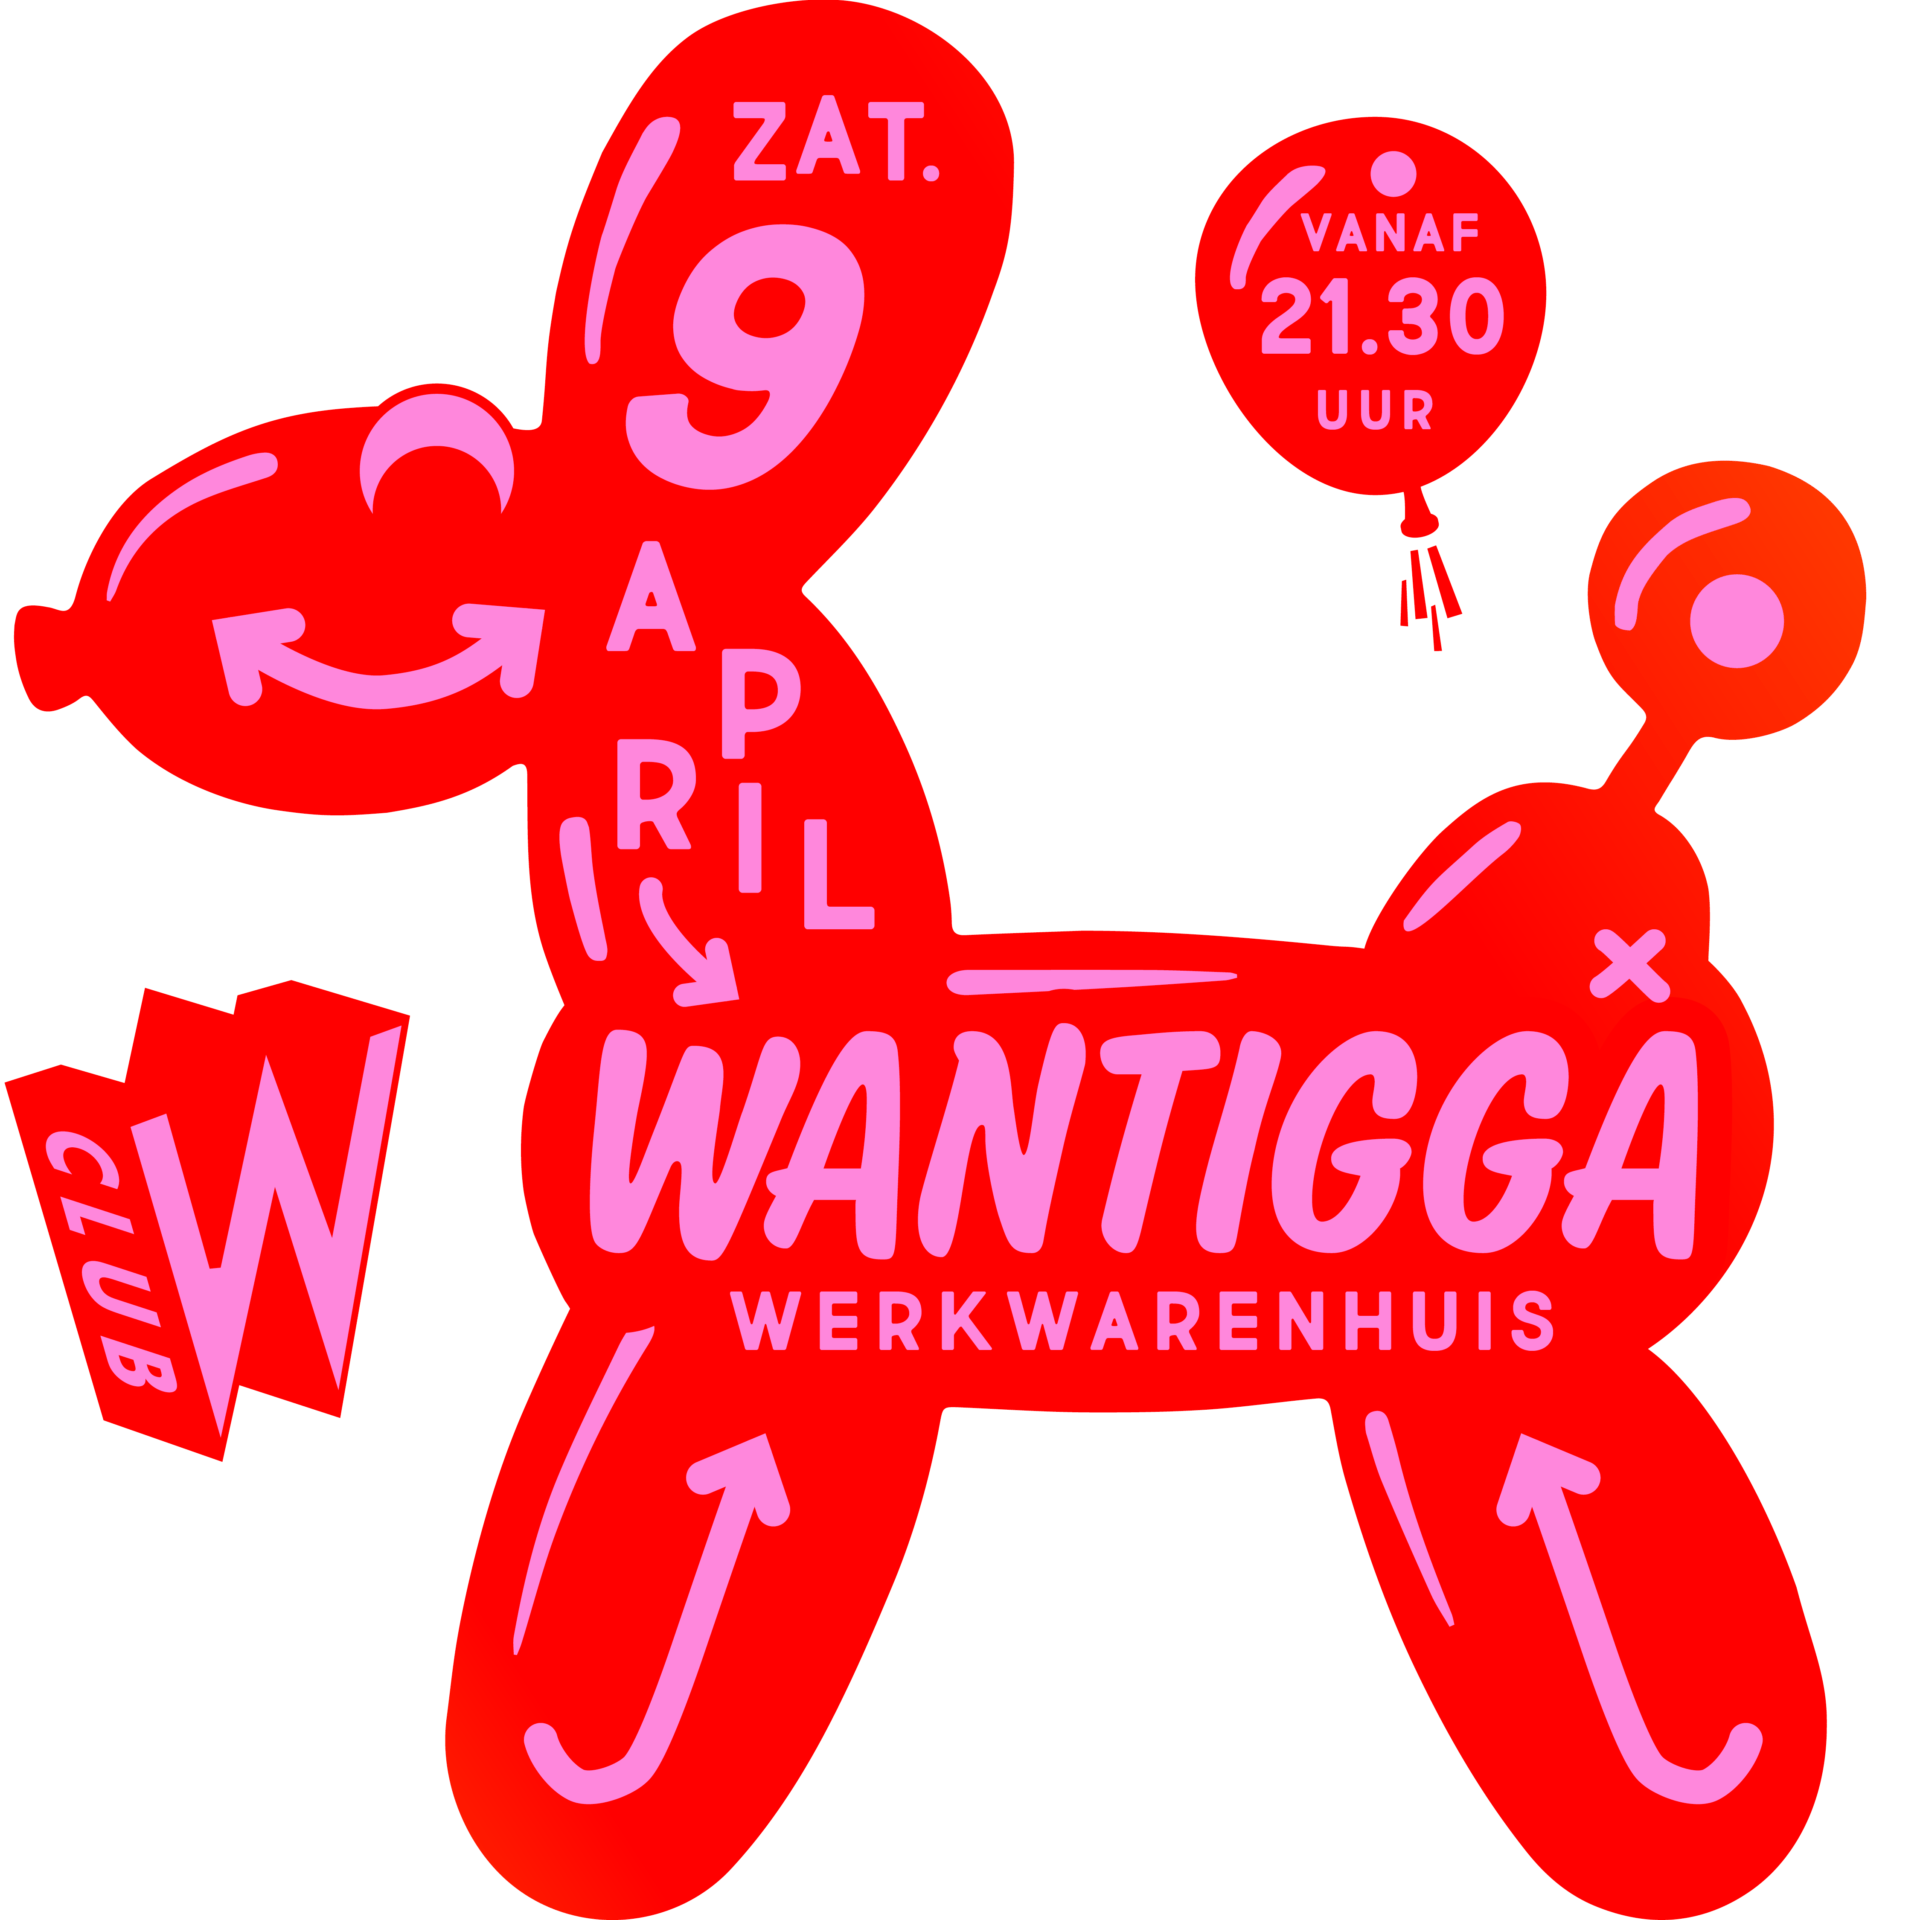 Club W – Wantigga